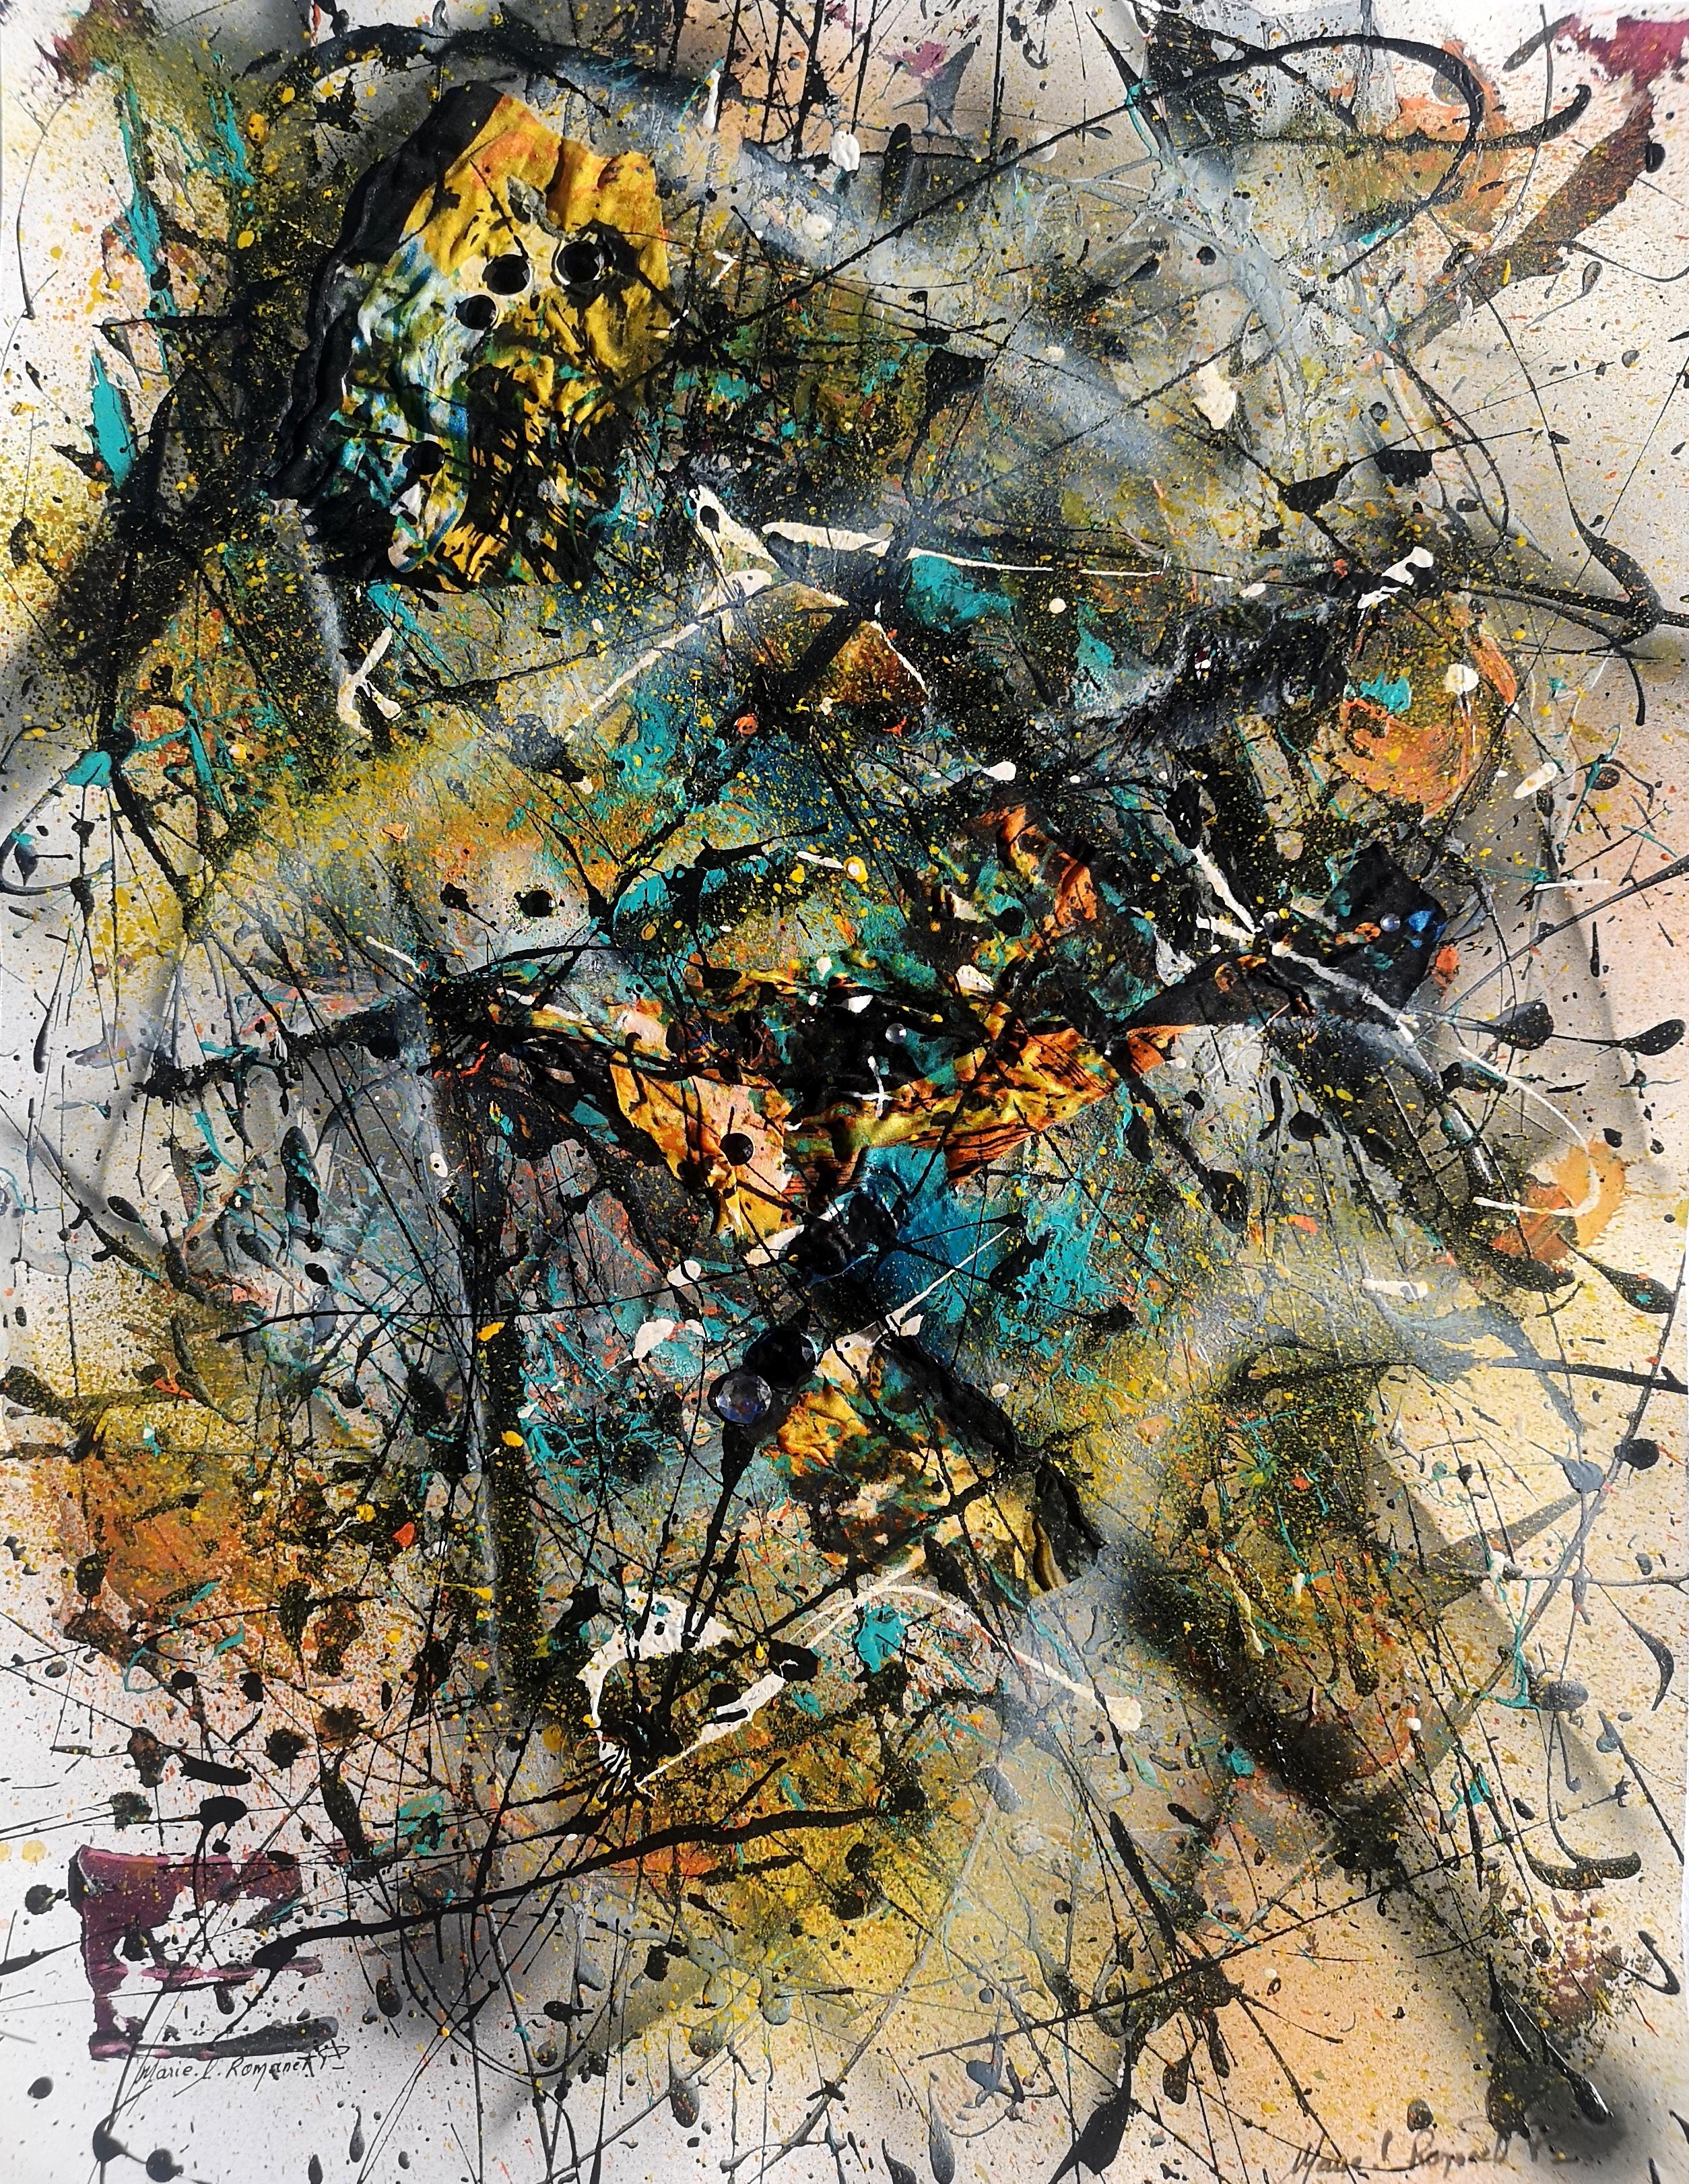 "LES FRUITS DE L'ACTE" Pollock style